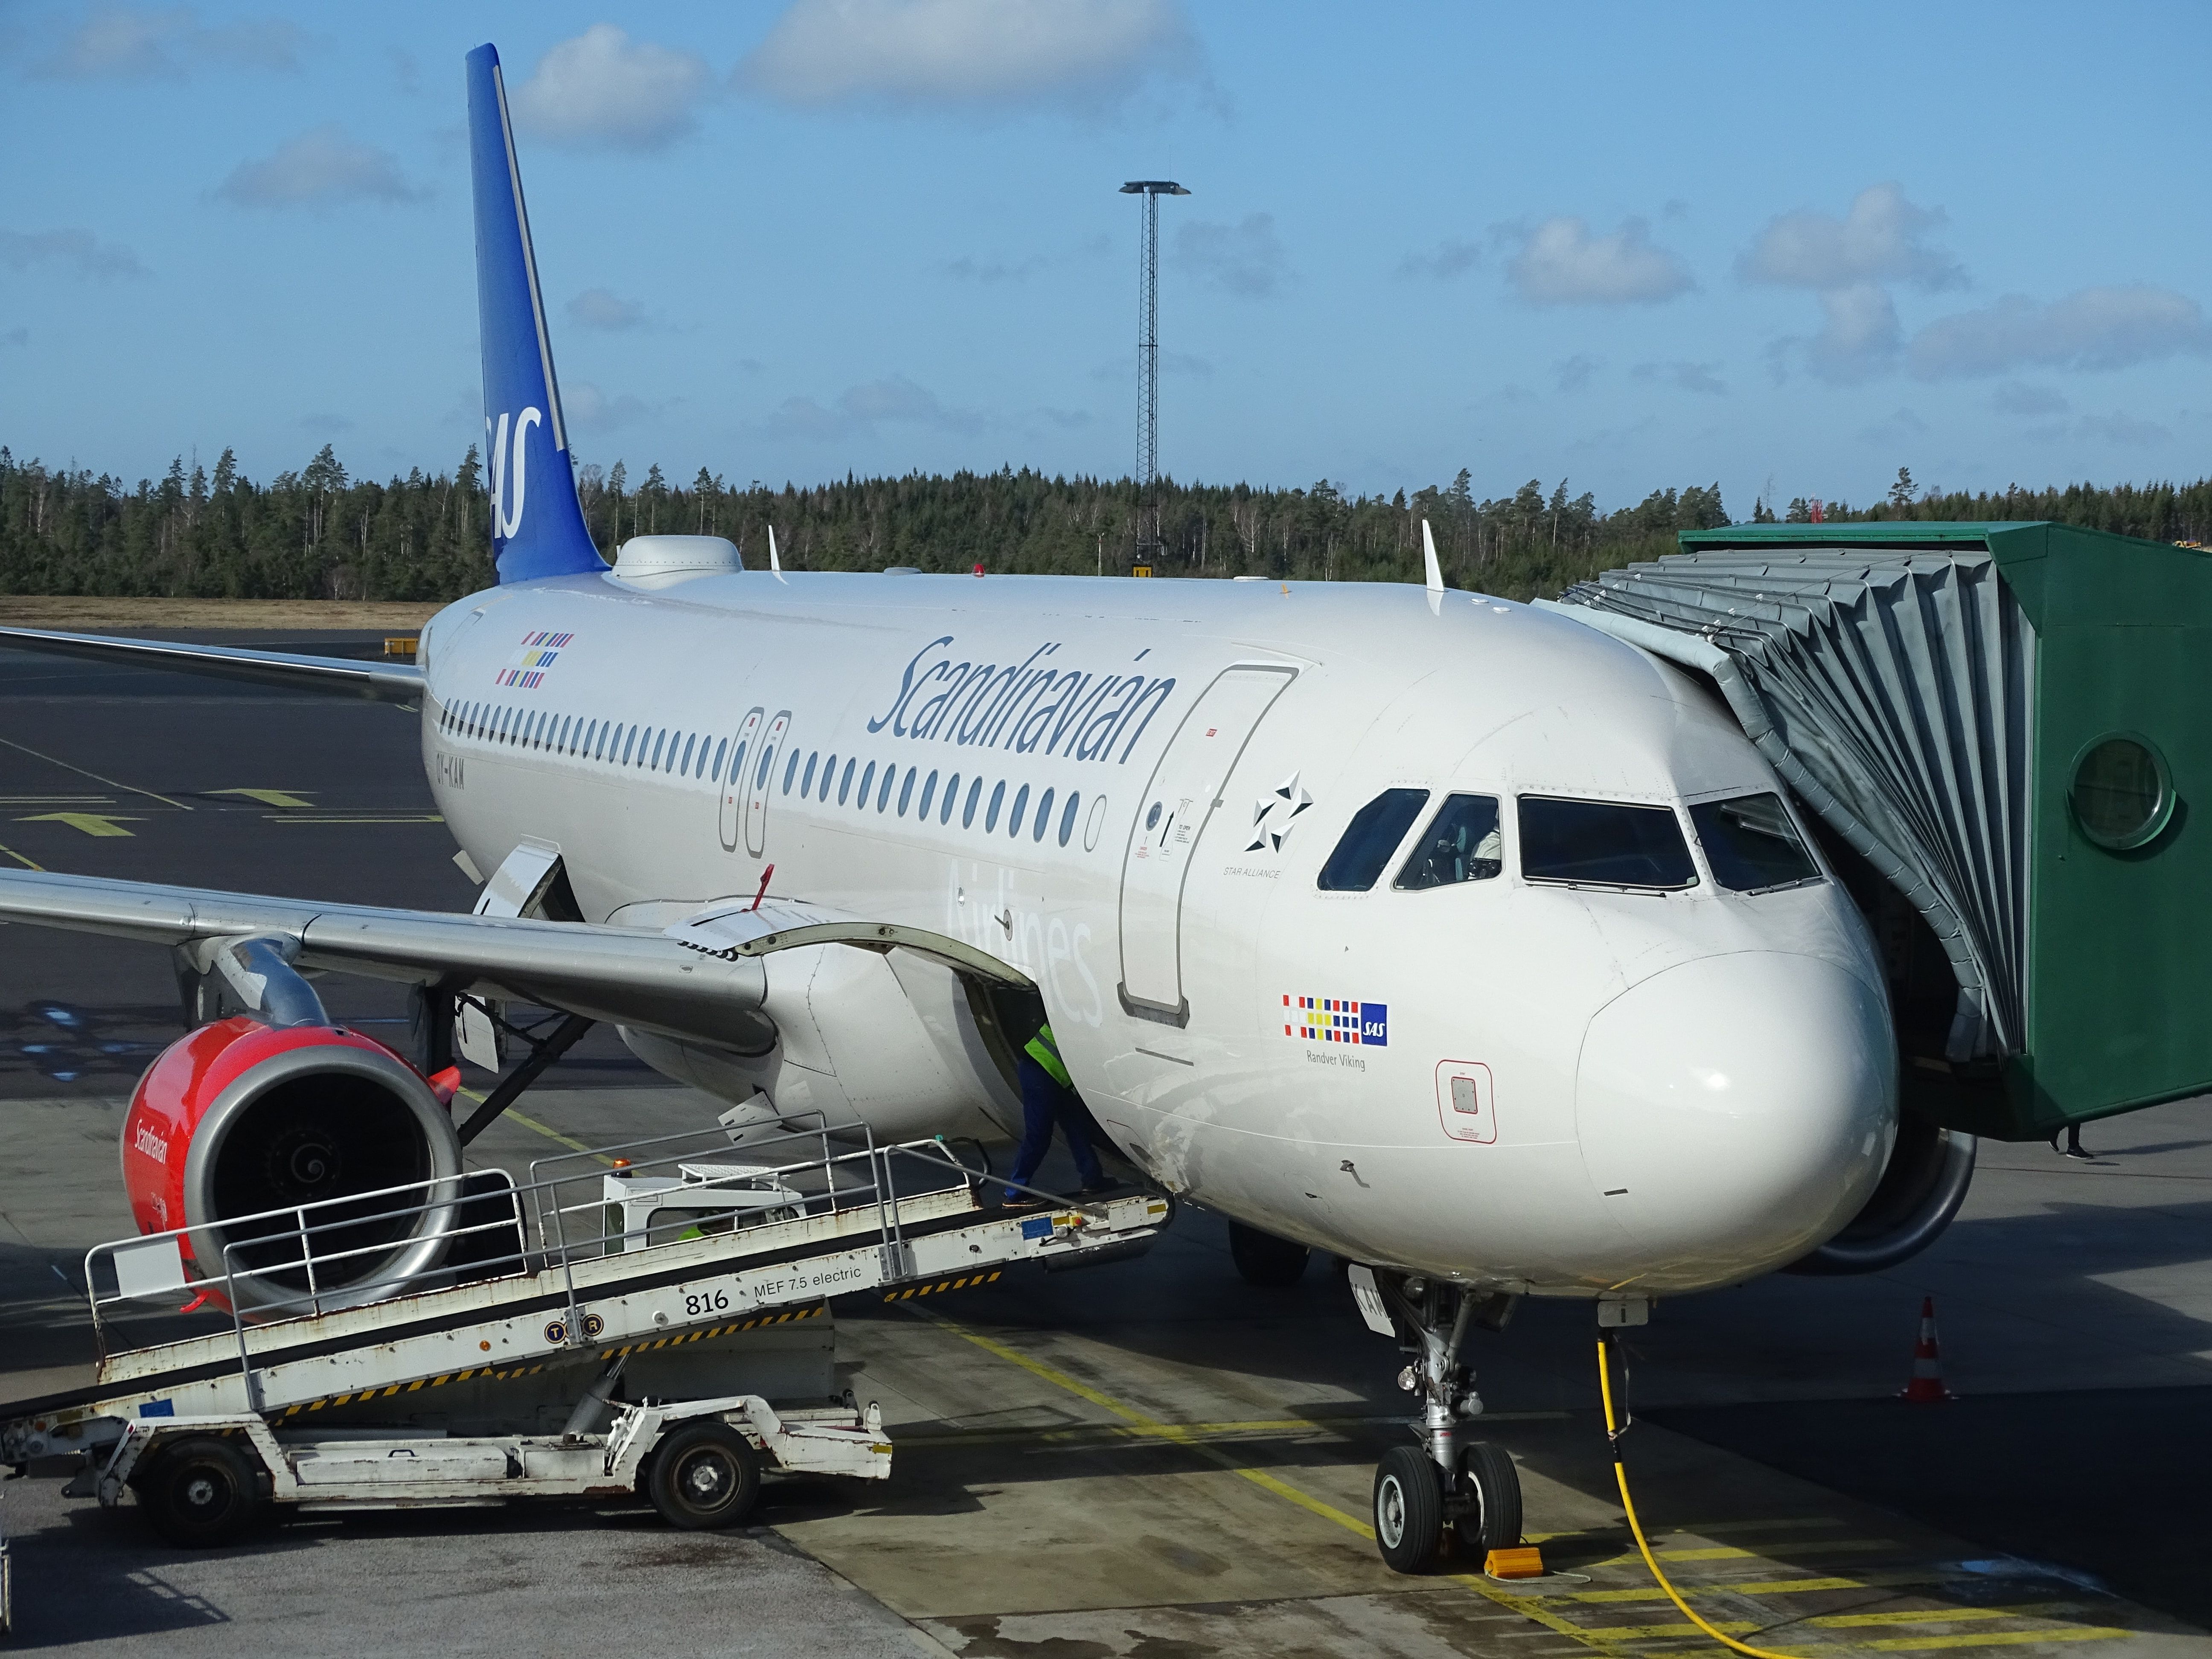 scandianvian airlines flight at gothenburg airport in sweden